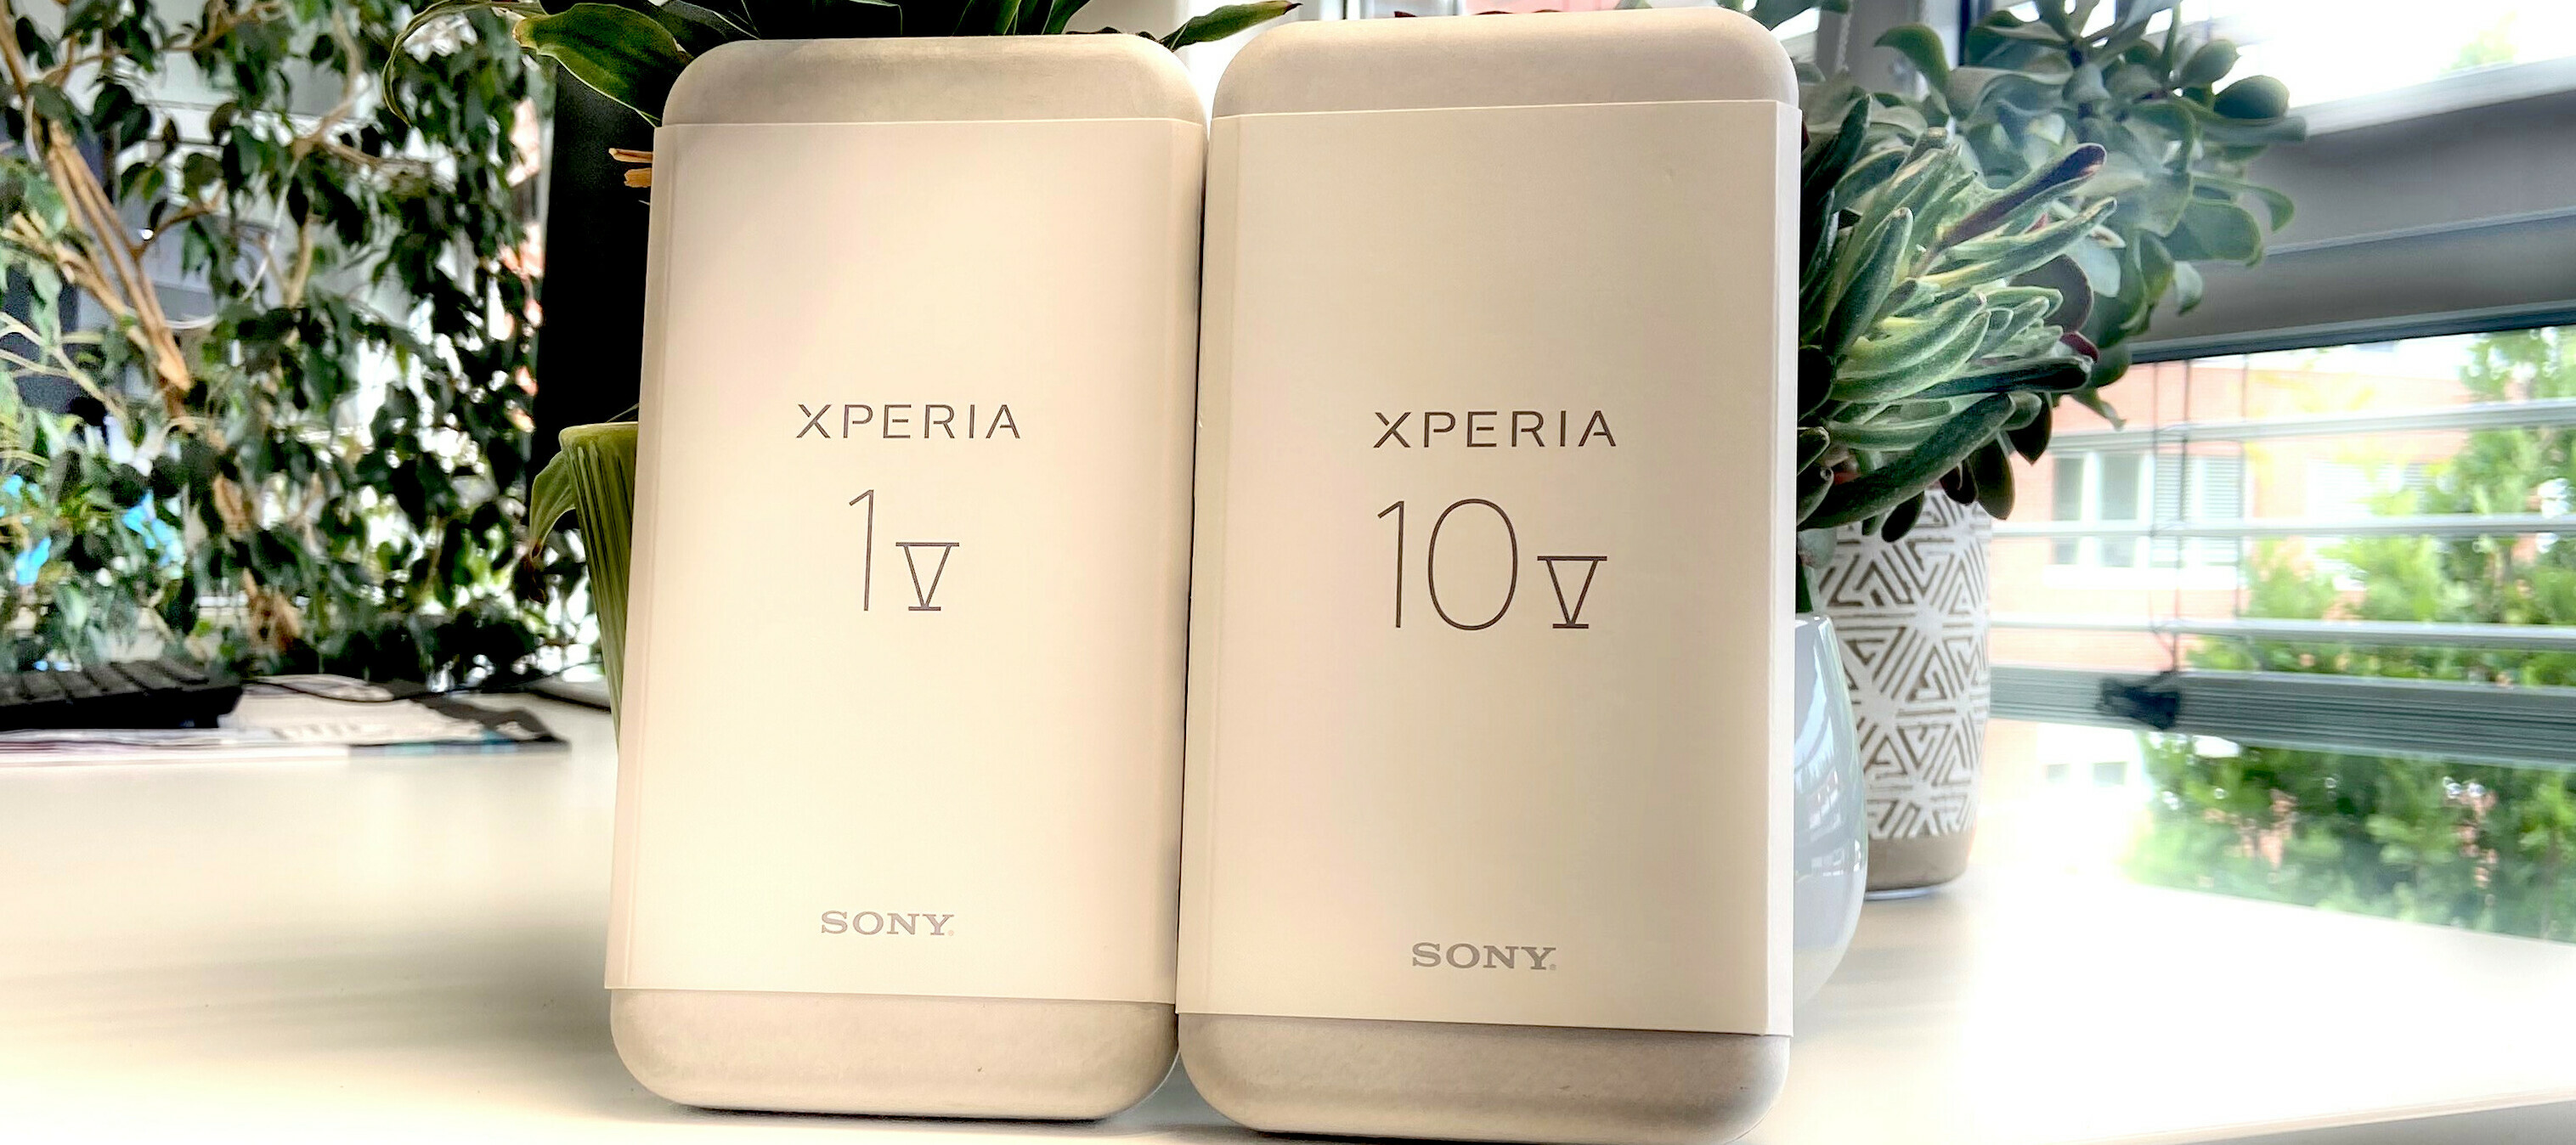 Sony Xperia 10 V & Sony Xperia 1 V - zwei Geräte - zwei Tester:innen